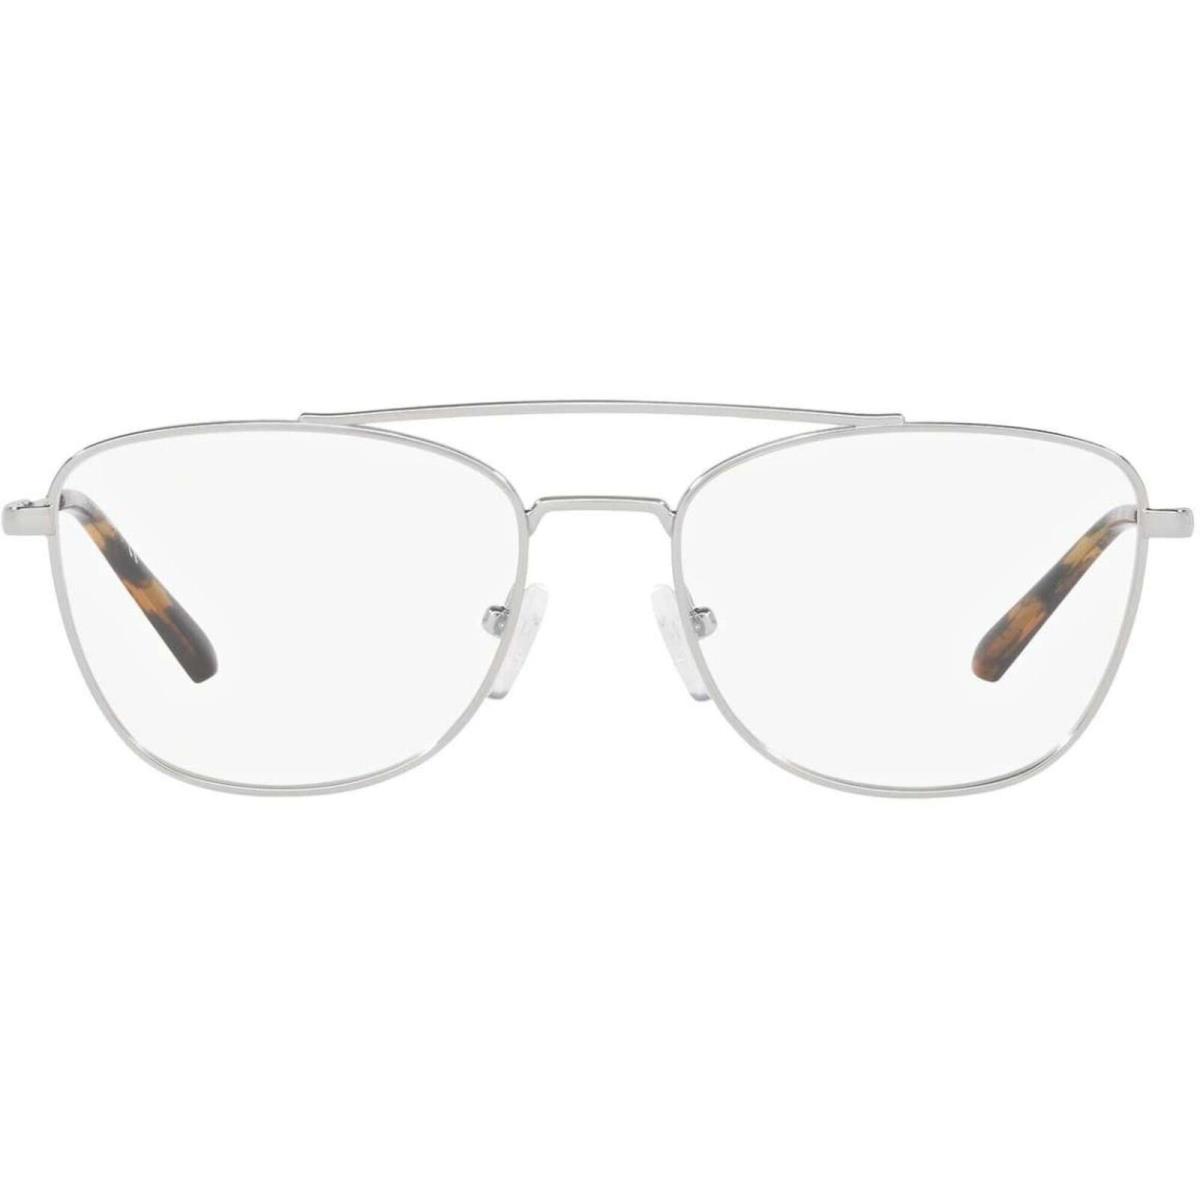 Michael Kors Women`s Eyeglasses Rose Gold Square Full Rim Frame 0MK3034 1153